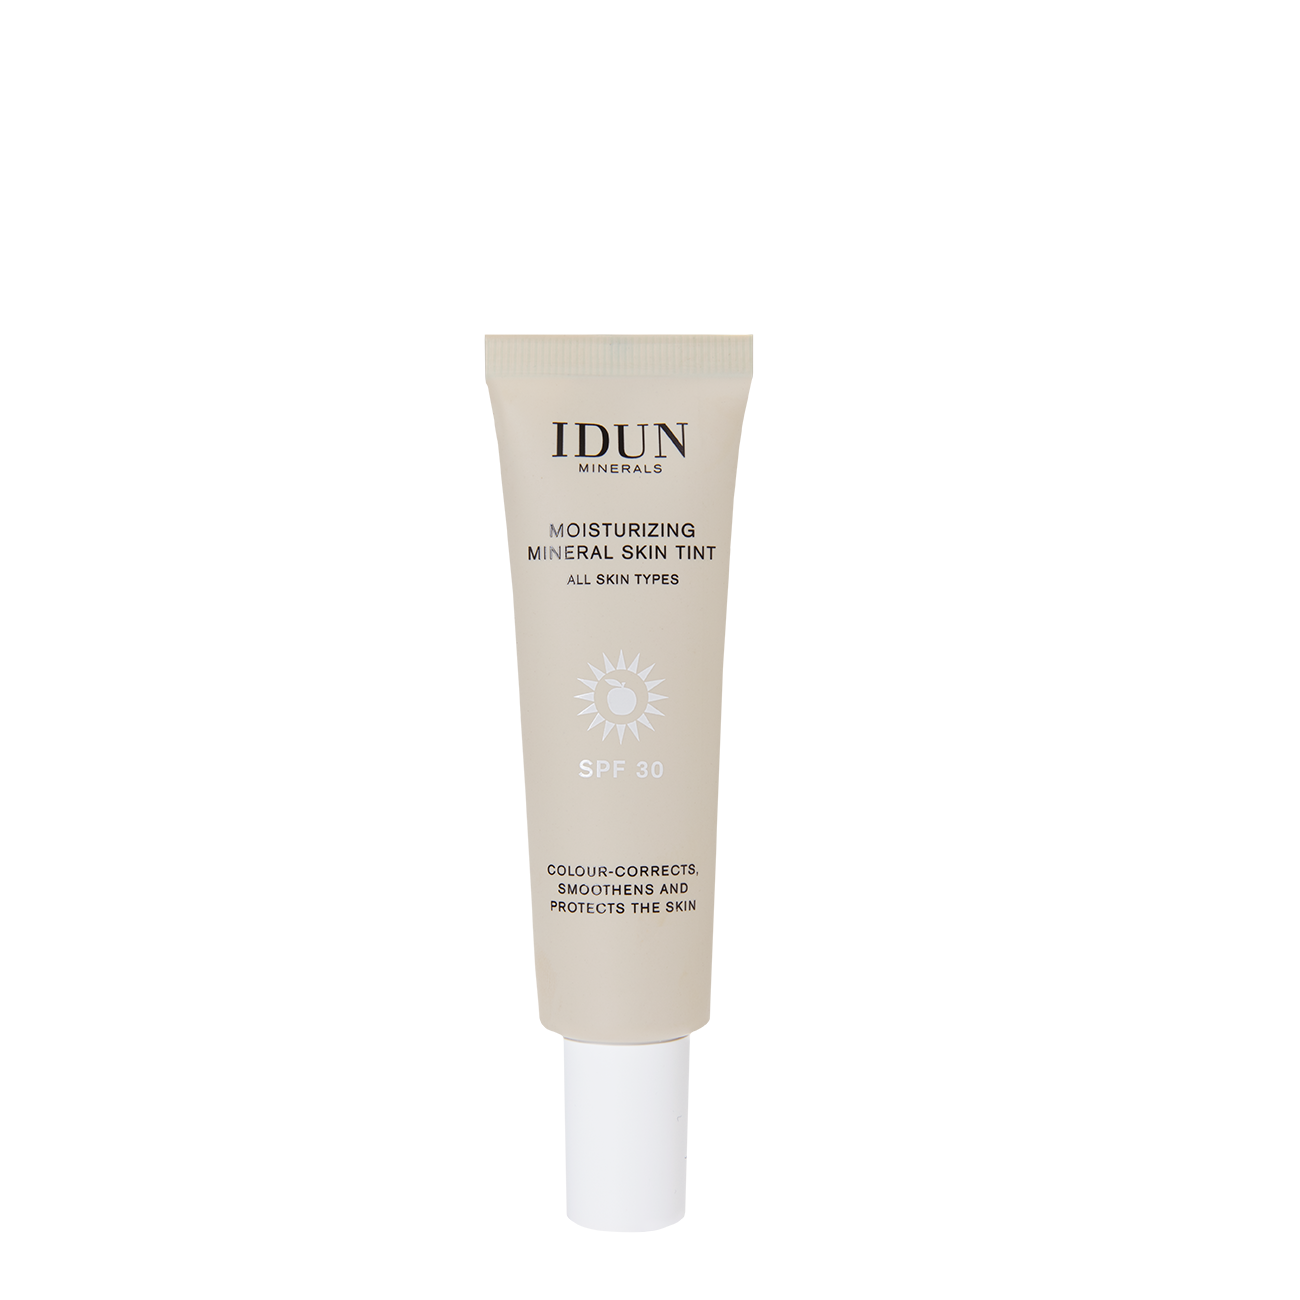 IDUN Minerals Moisturizing Mineral Skin Tint SPF30 Långholmen Light/Medium Neutral 27 ml